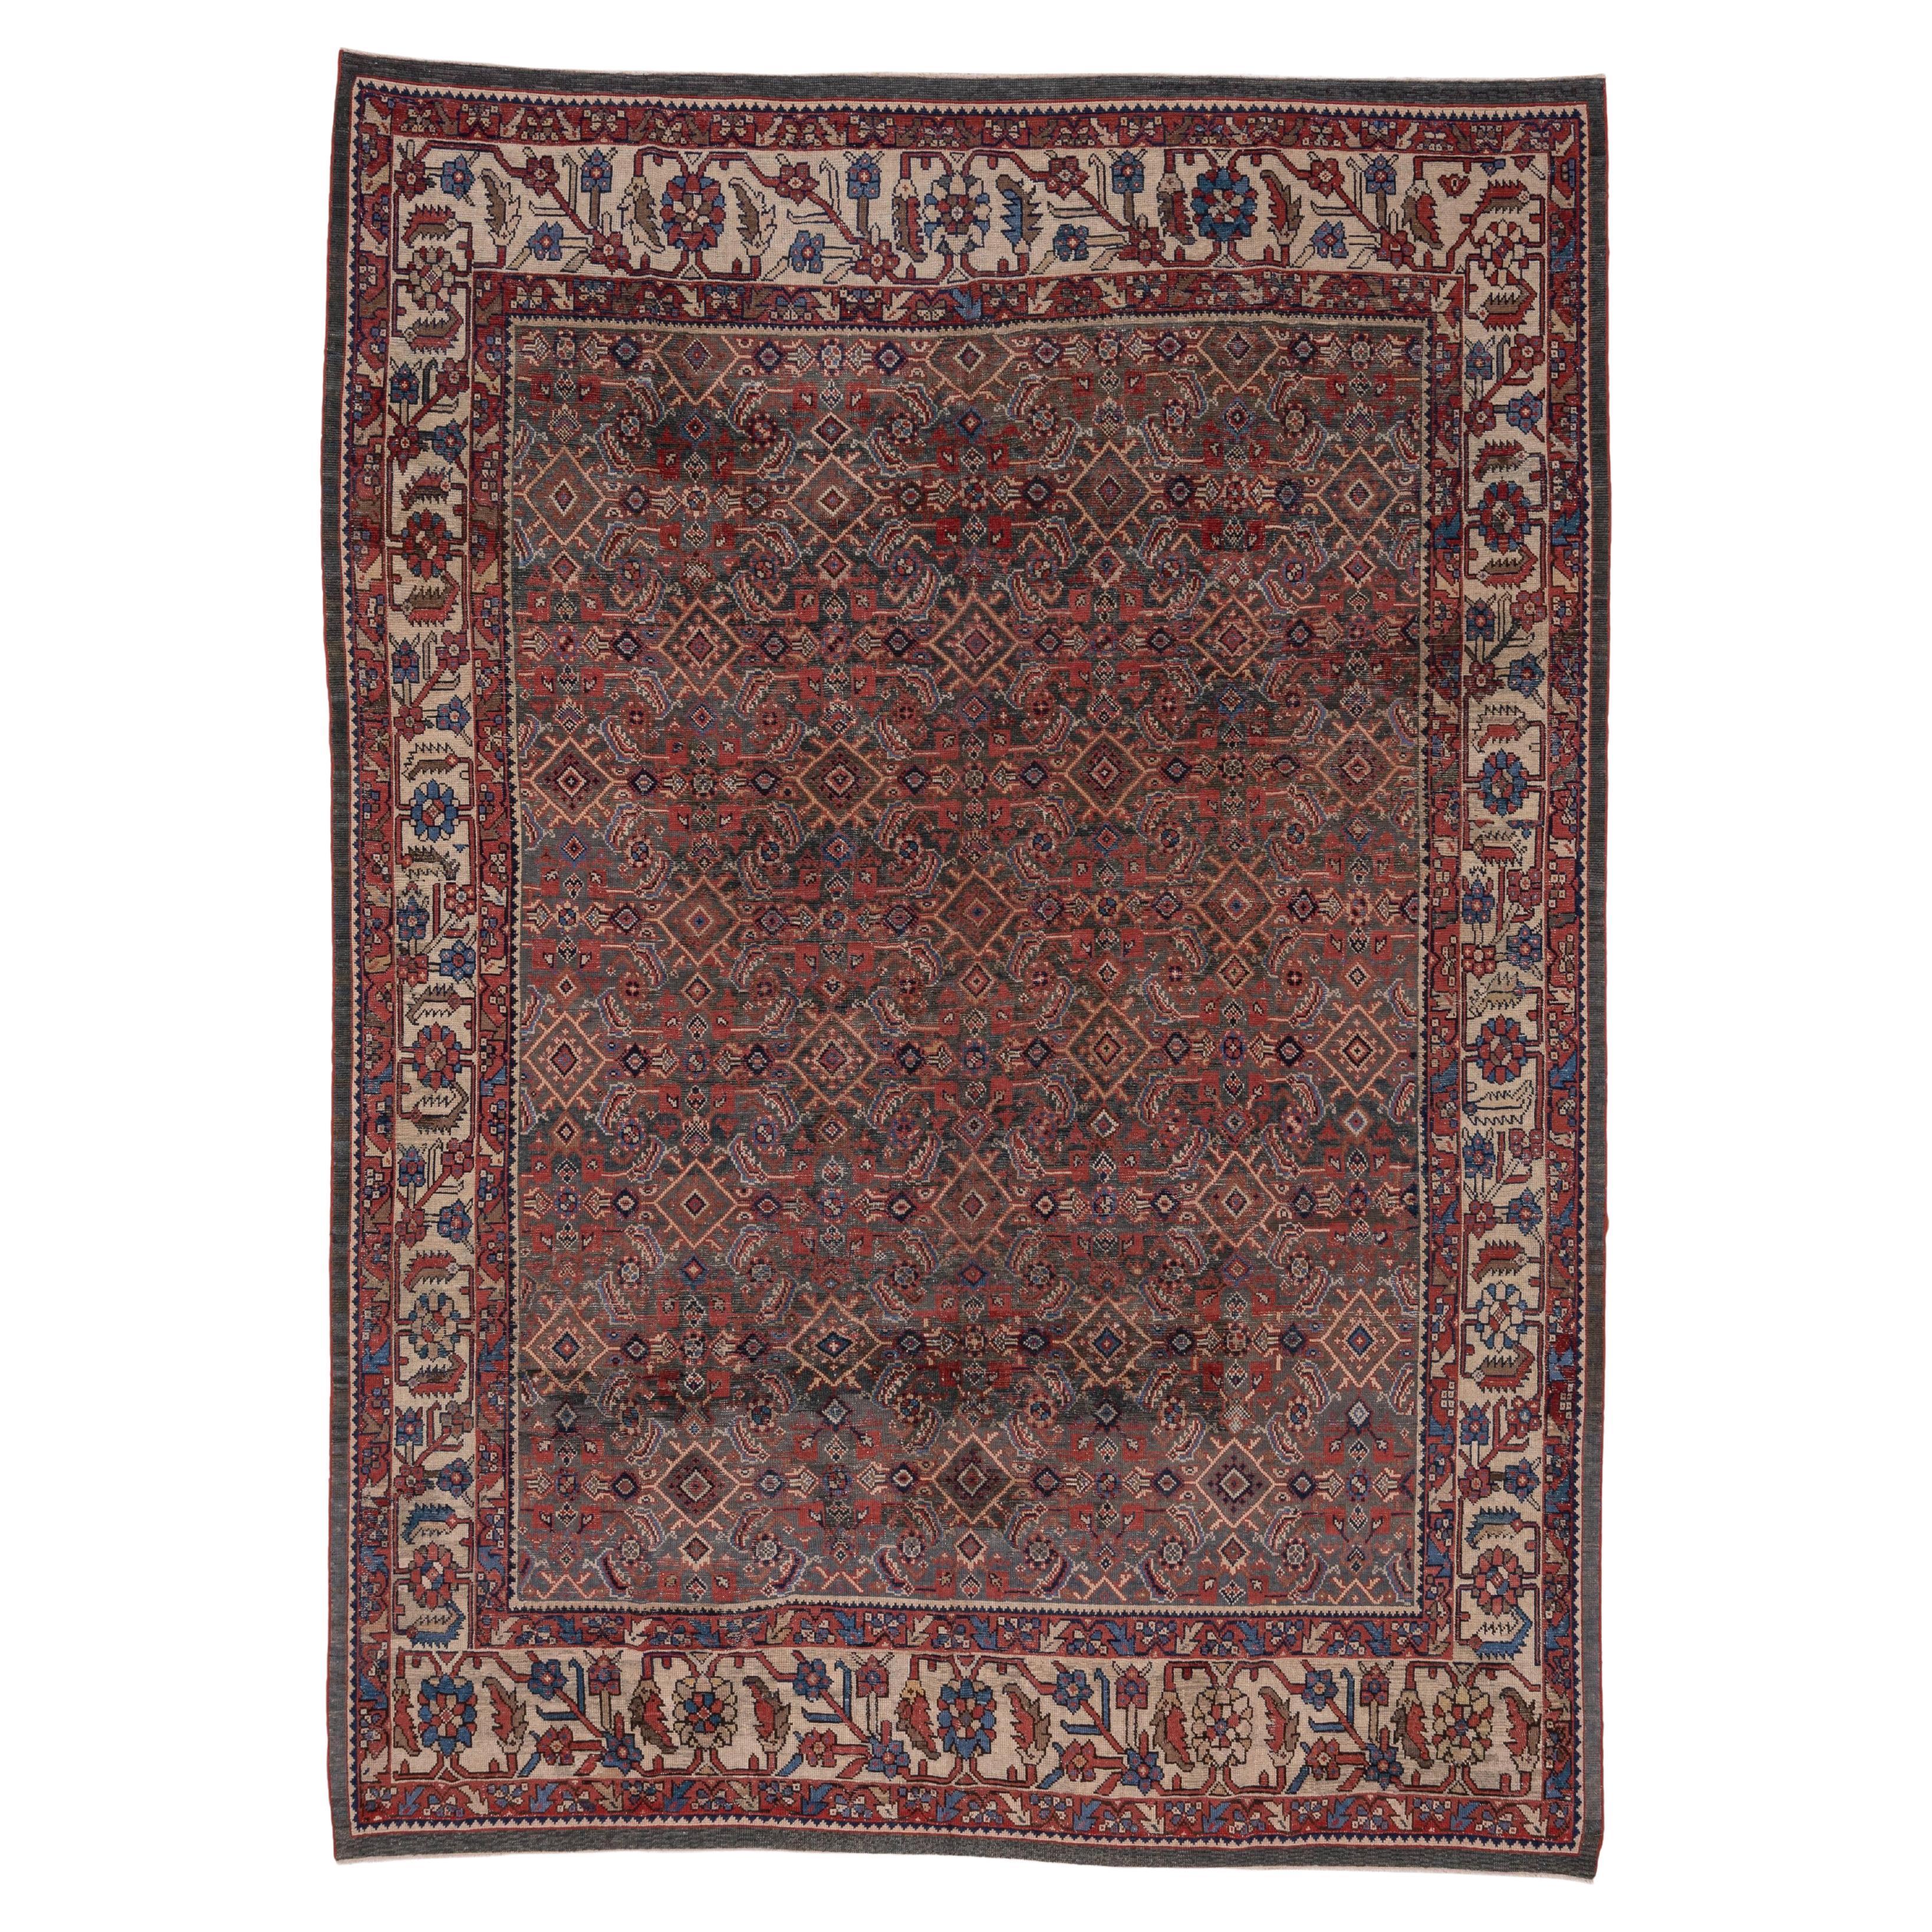 Antique Mahal Carpet For Sale